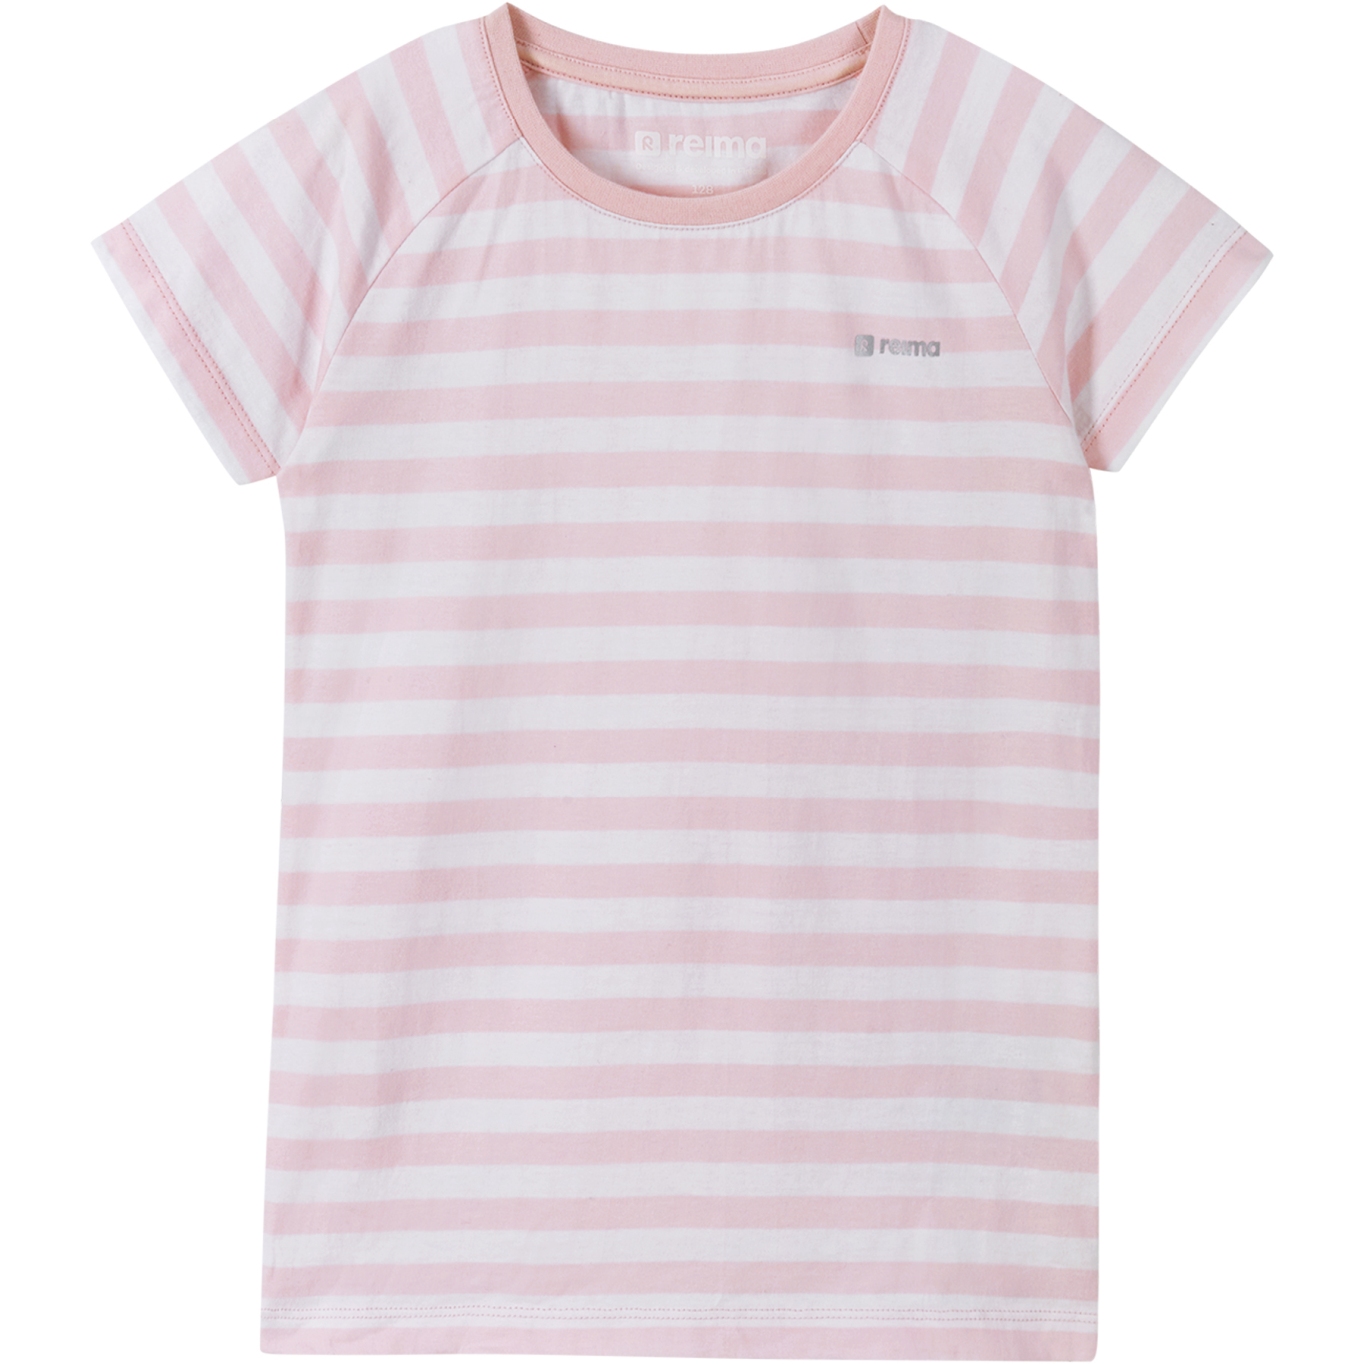 Produktbild von Reima Kinder T-Shirt Raitoja - pale rose 4013